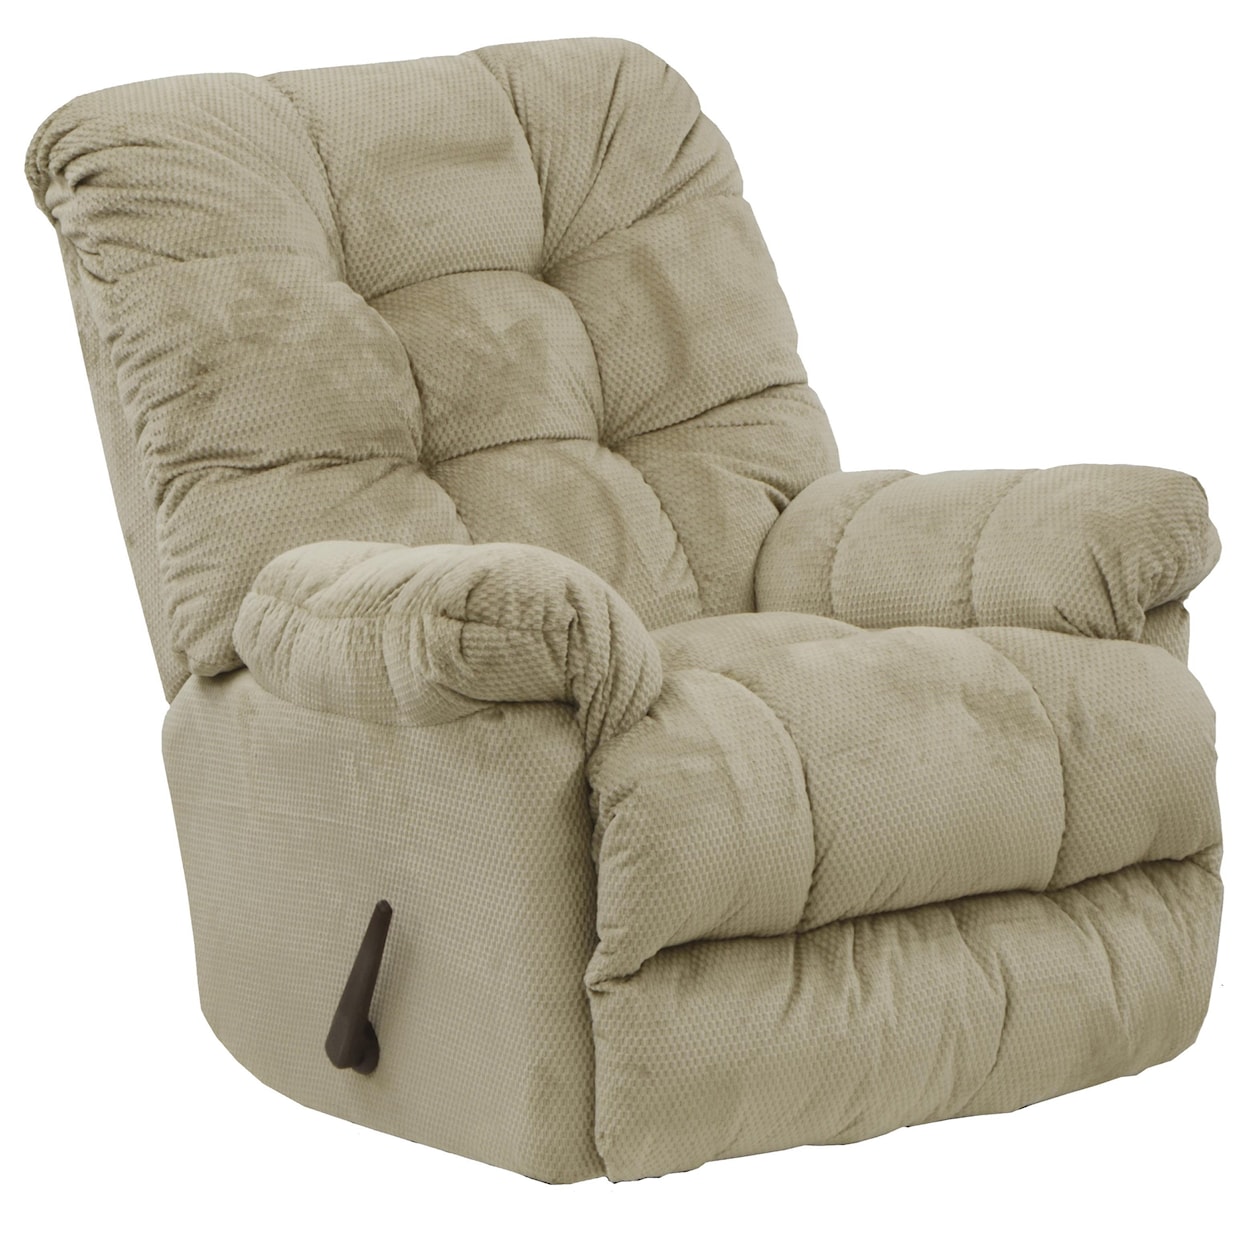 Carolina Furniture 4737 Nettles Chaise Rocker Recliner w/ Heat & Massage